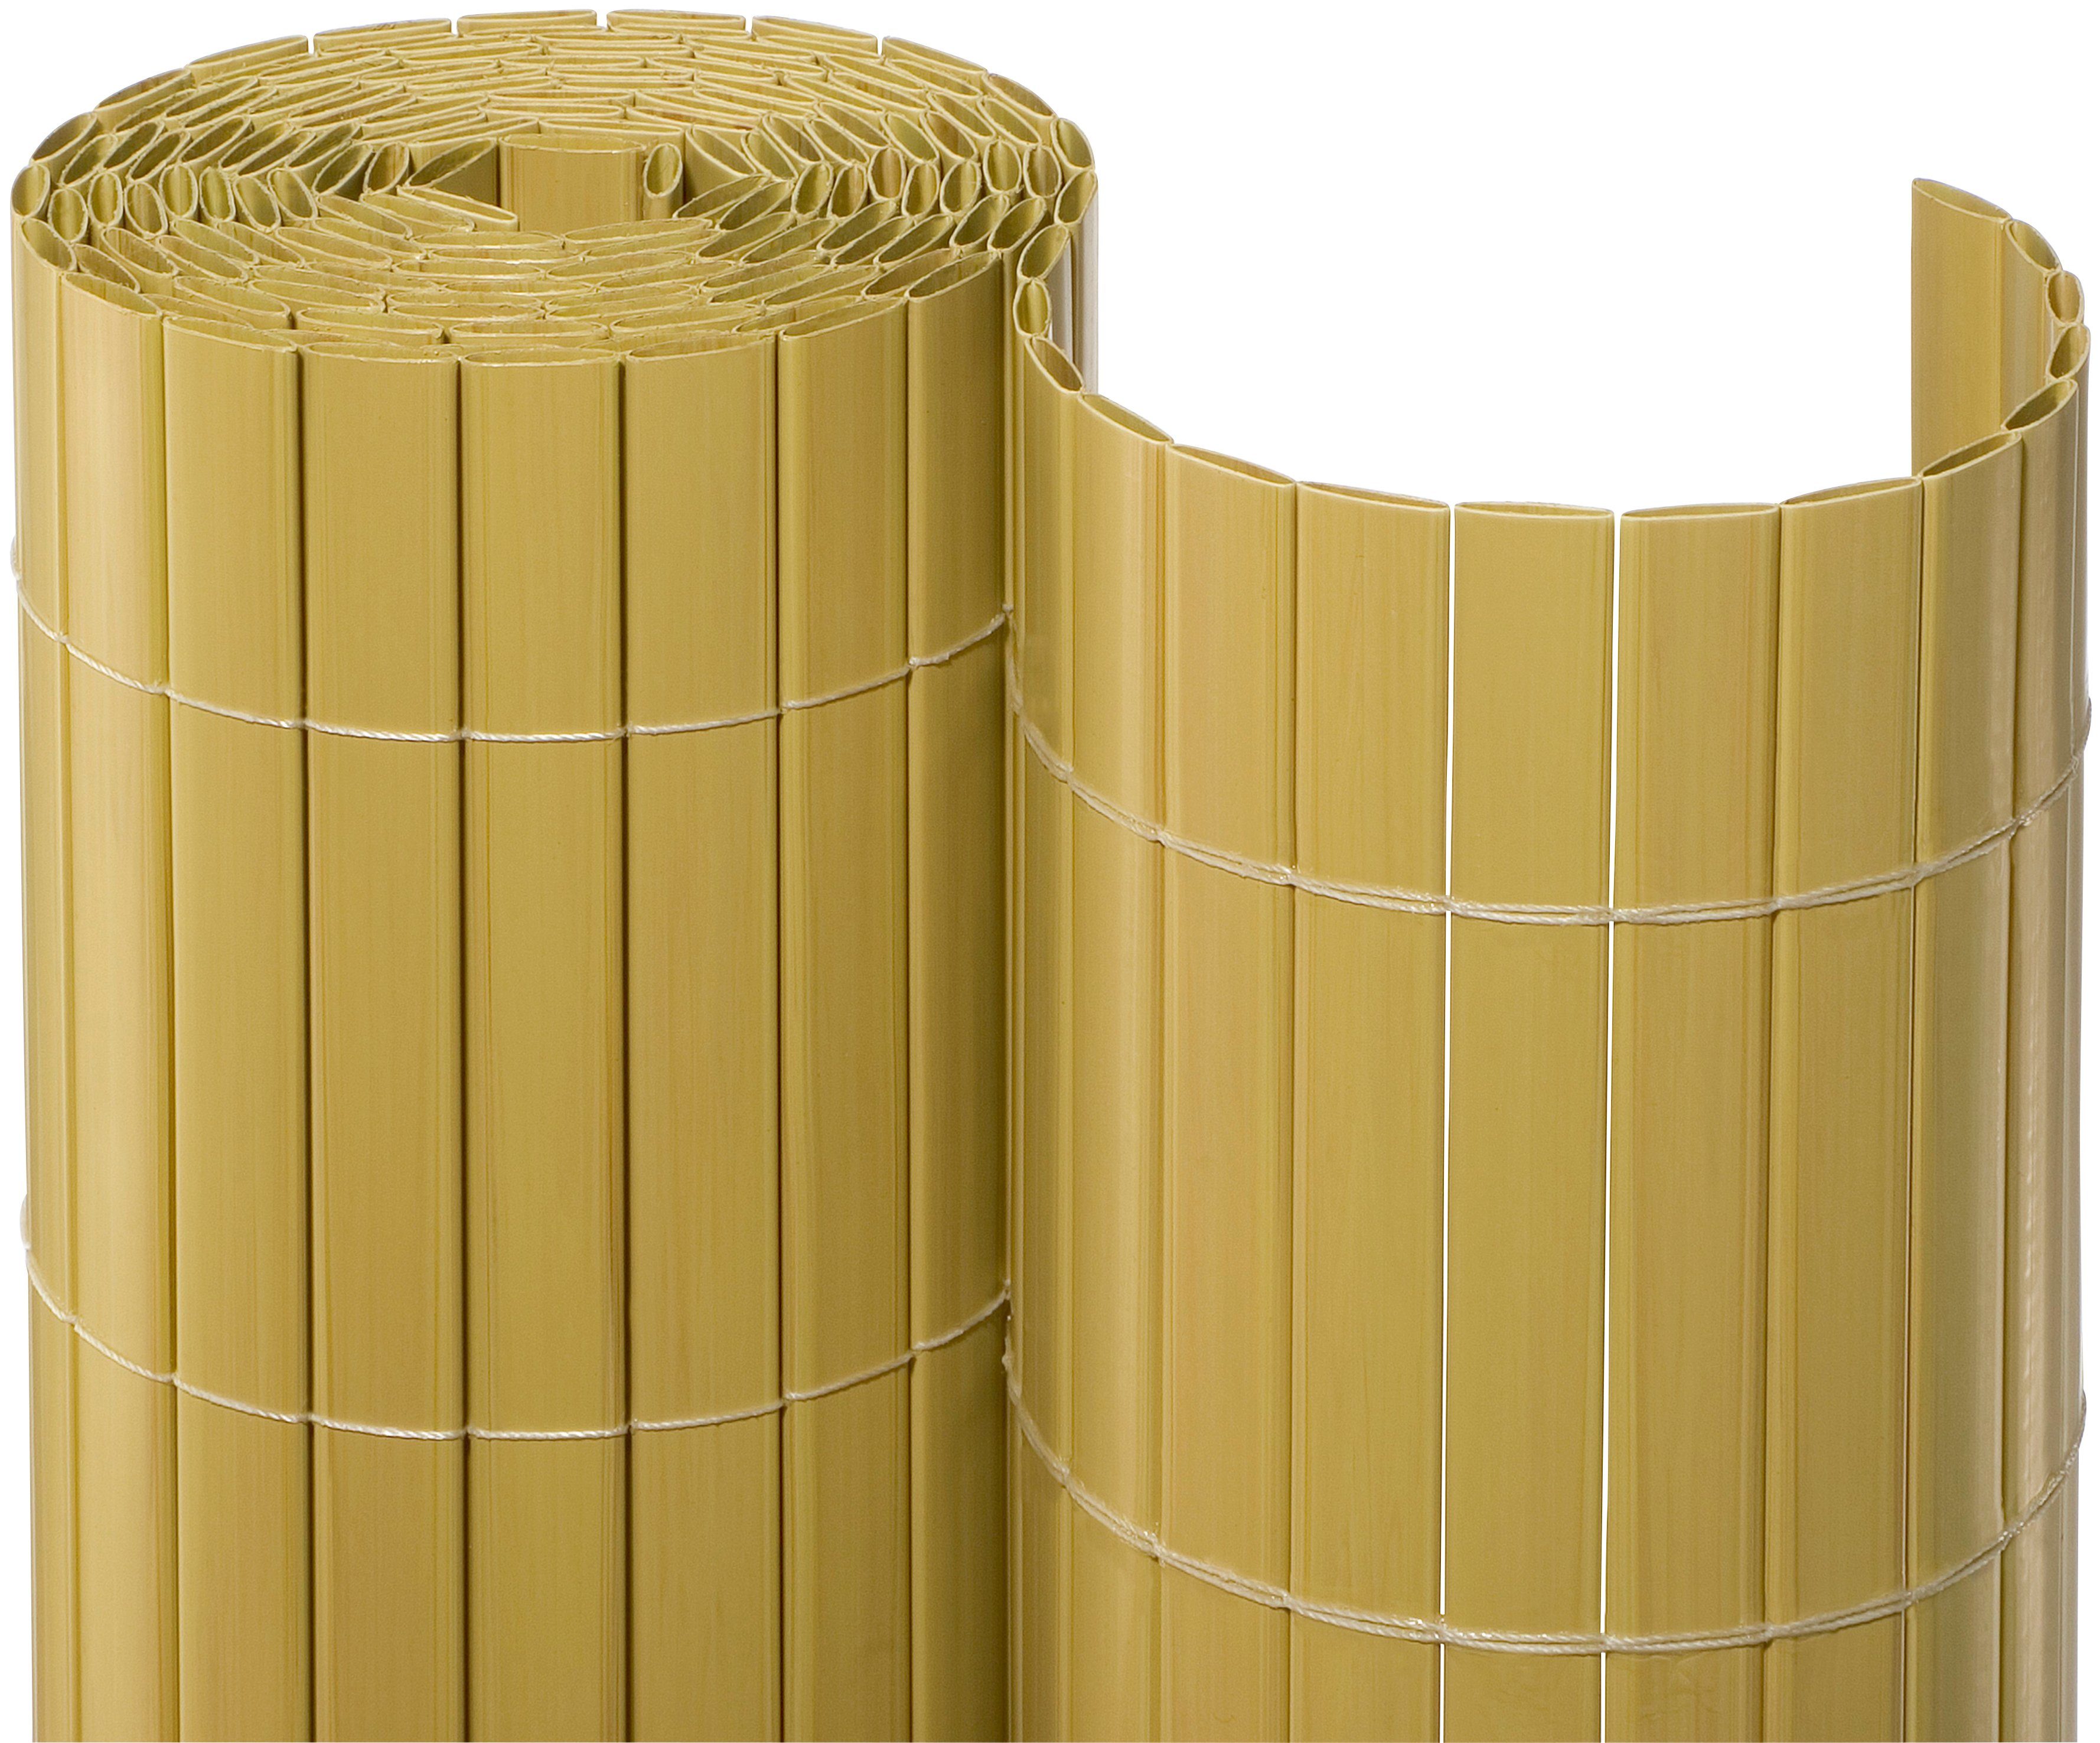 NOOR Balkonsichtschutz BxH: 3x1,6 Meter, bambusfarben online kaufen | OTTO